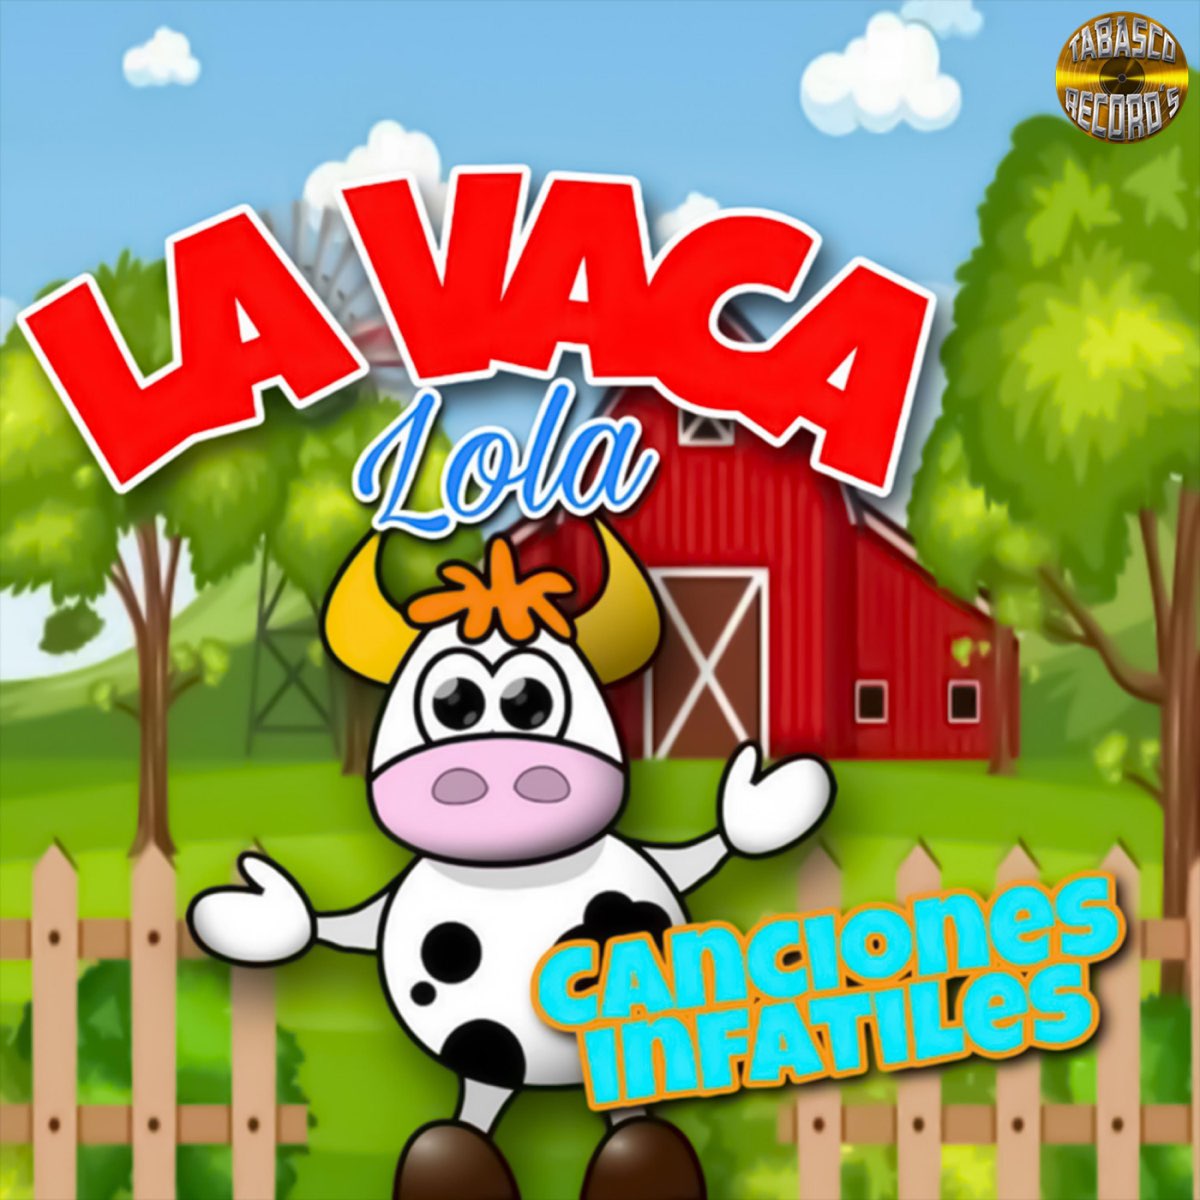 La Vaca Lola - Album by Canciones Infantiles - Apple Music